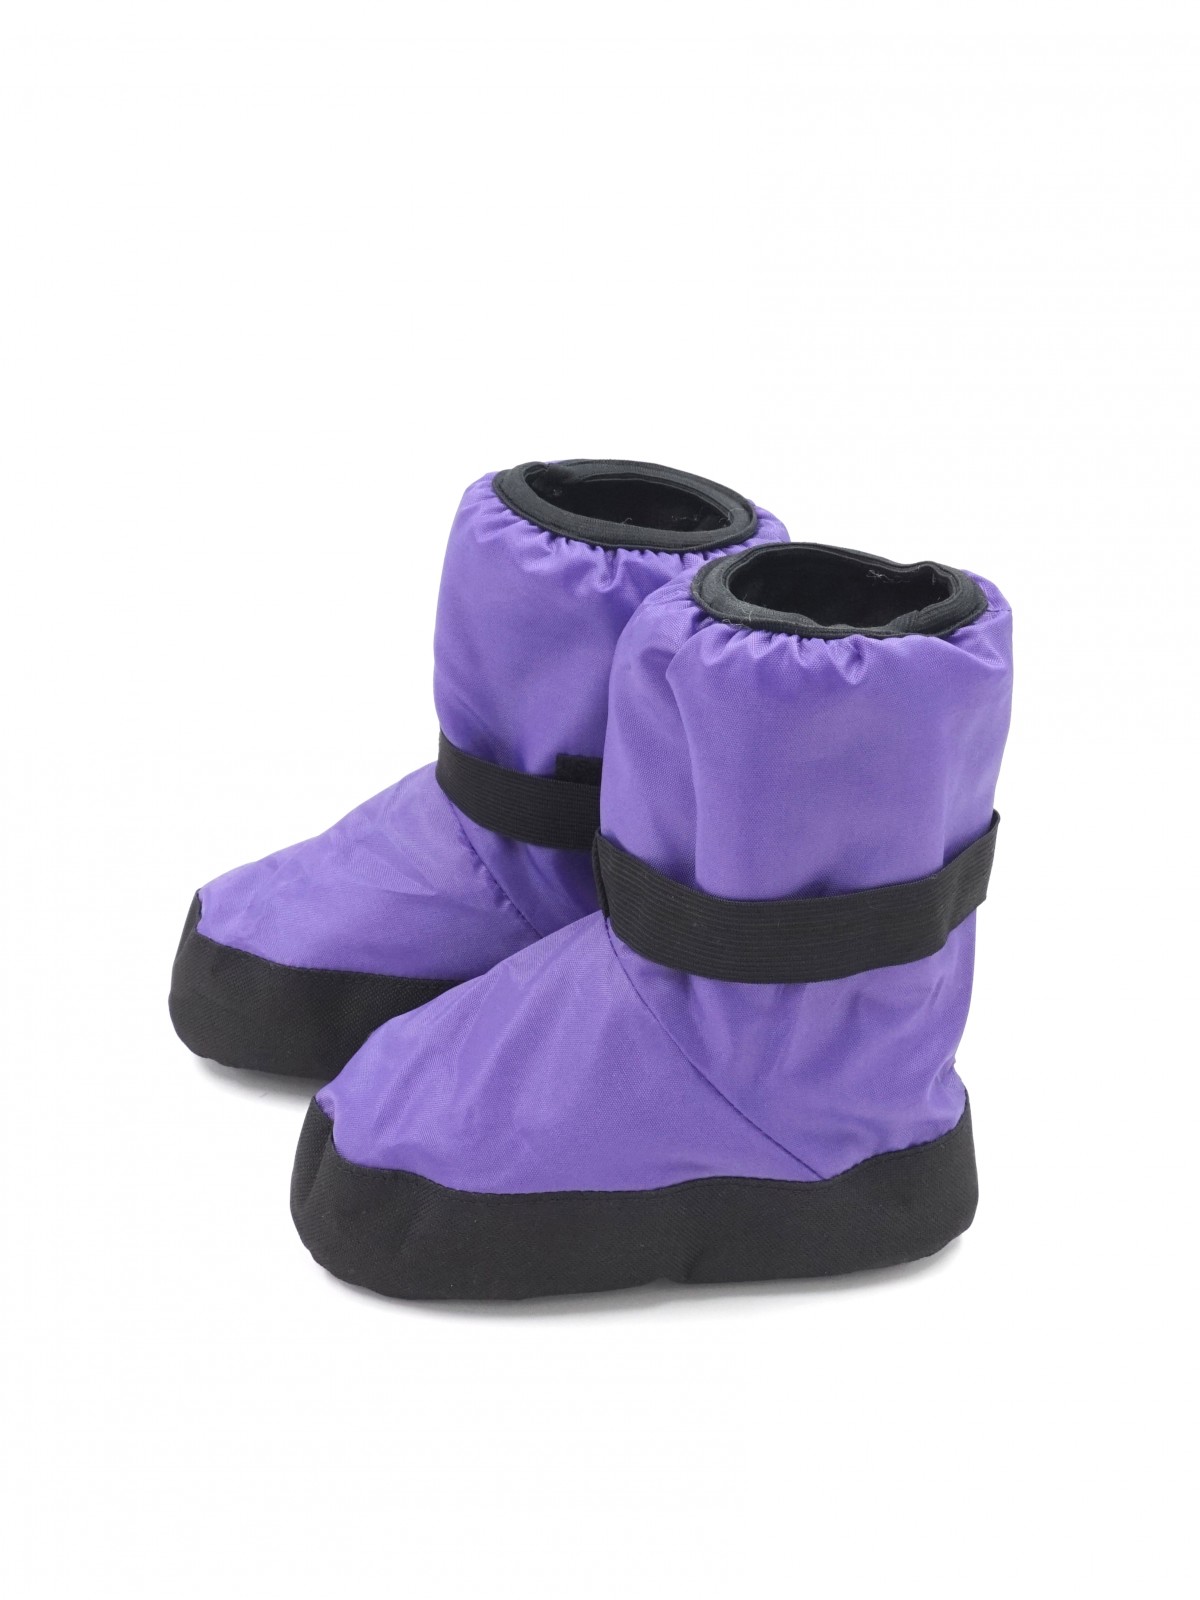 Купить Разогревочные сапожки (чуни) фиолетовые INDIGO OBR-3 по низкой цене  в интернет магазине Intancio